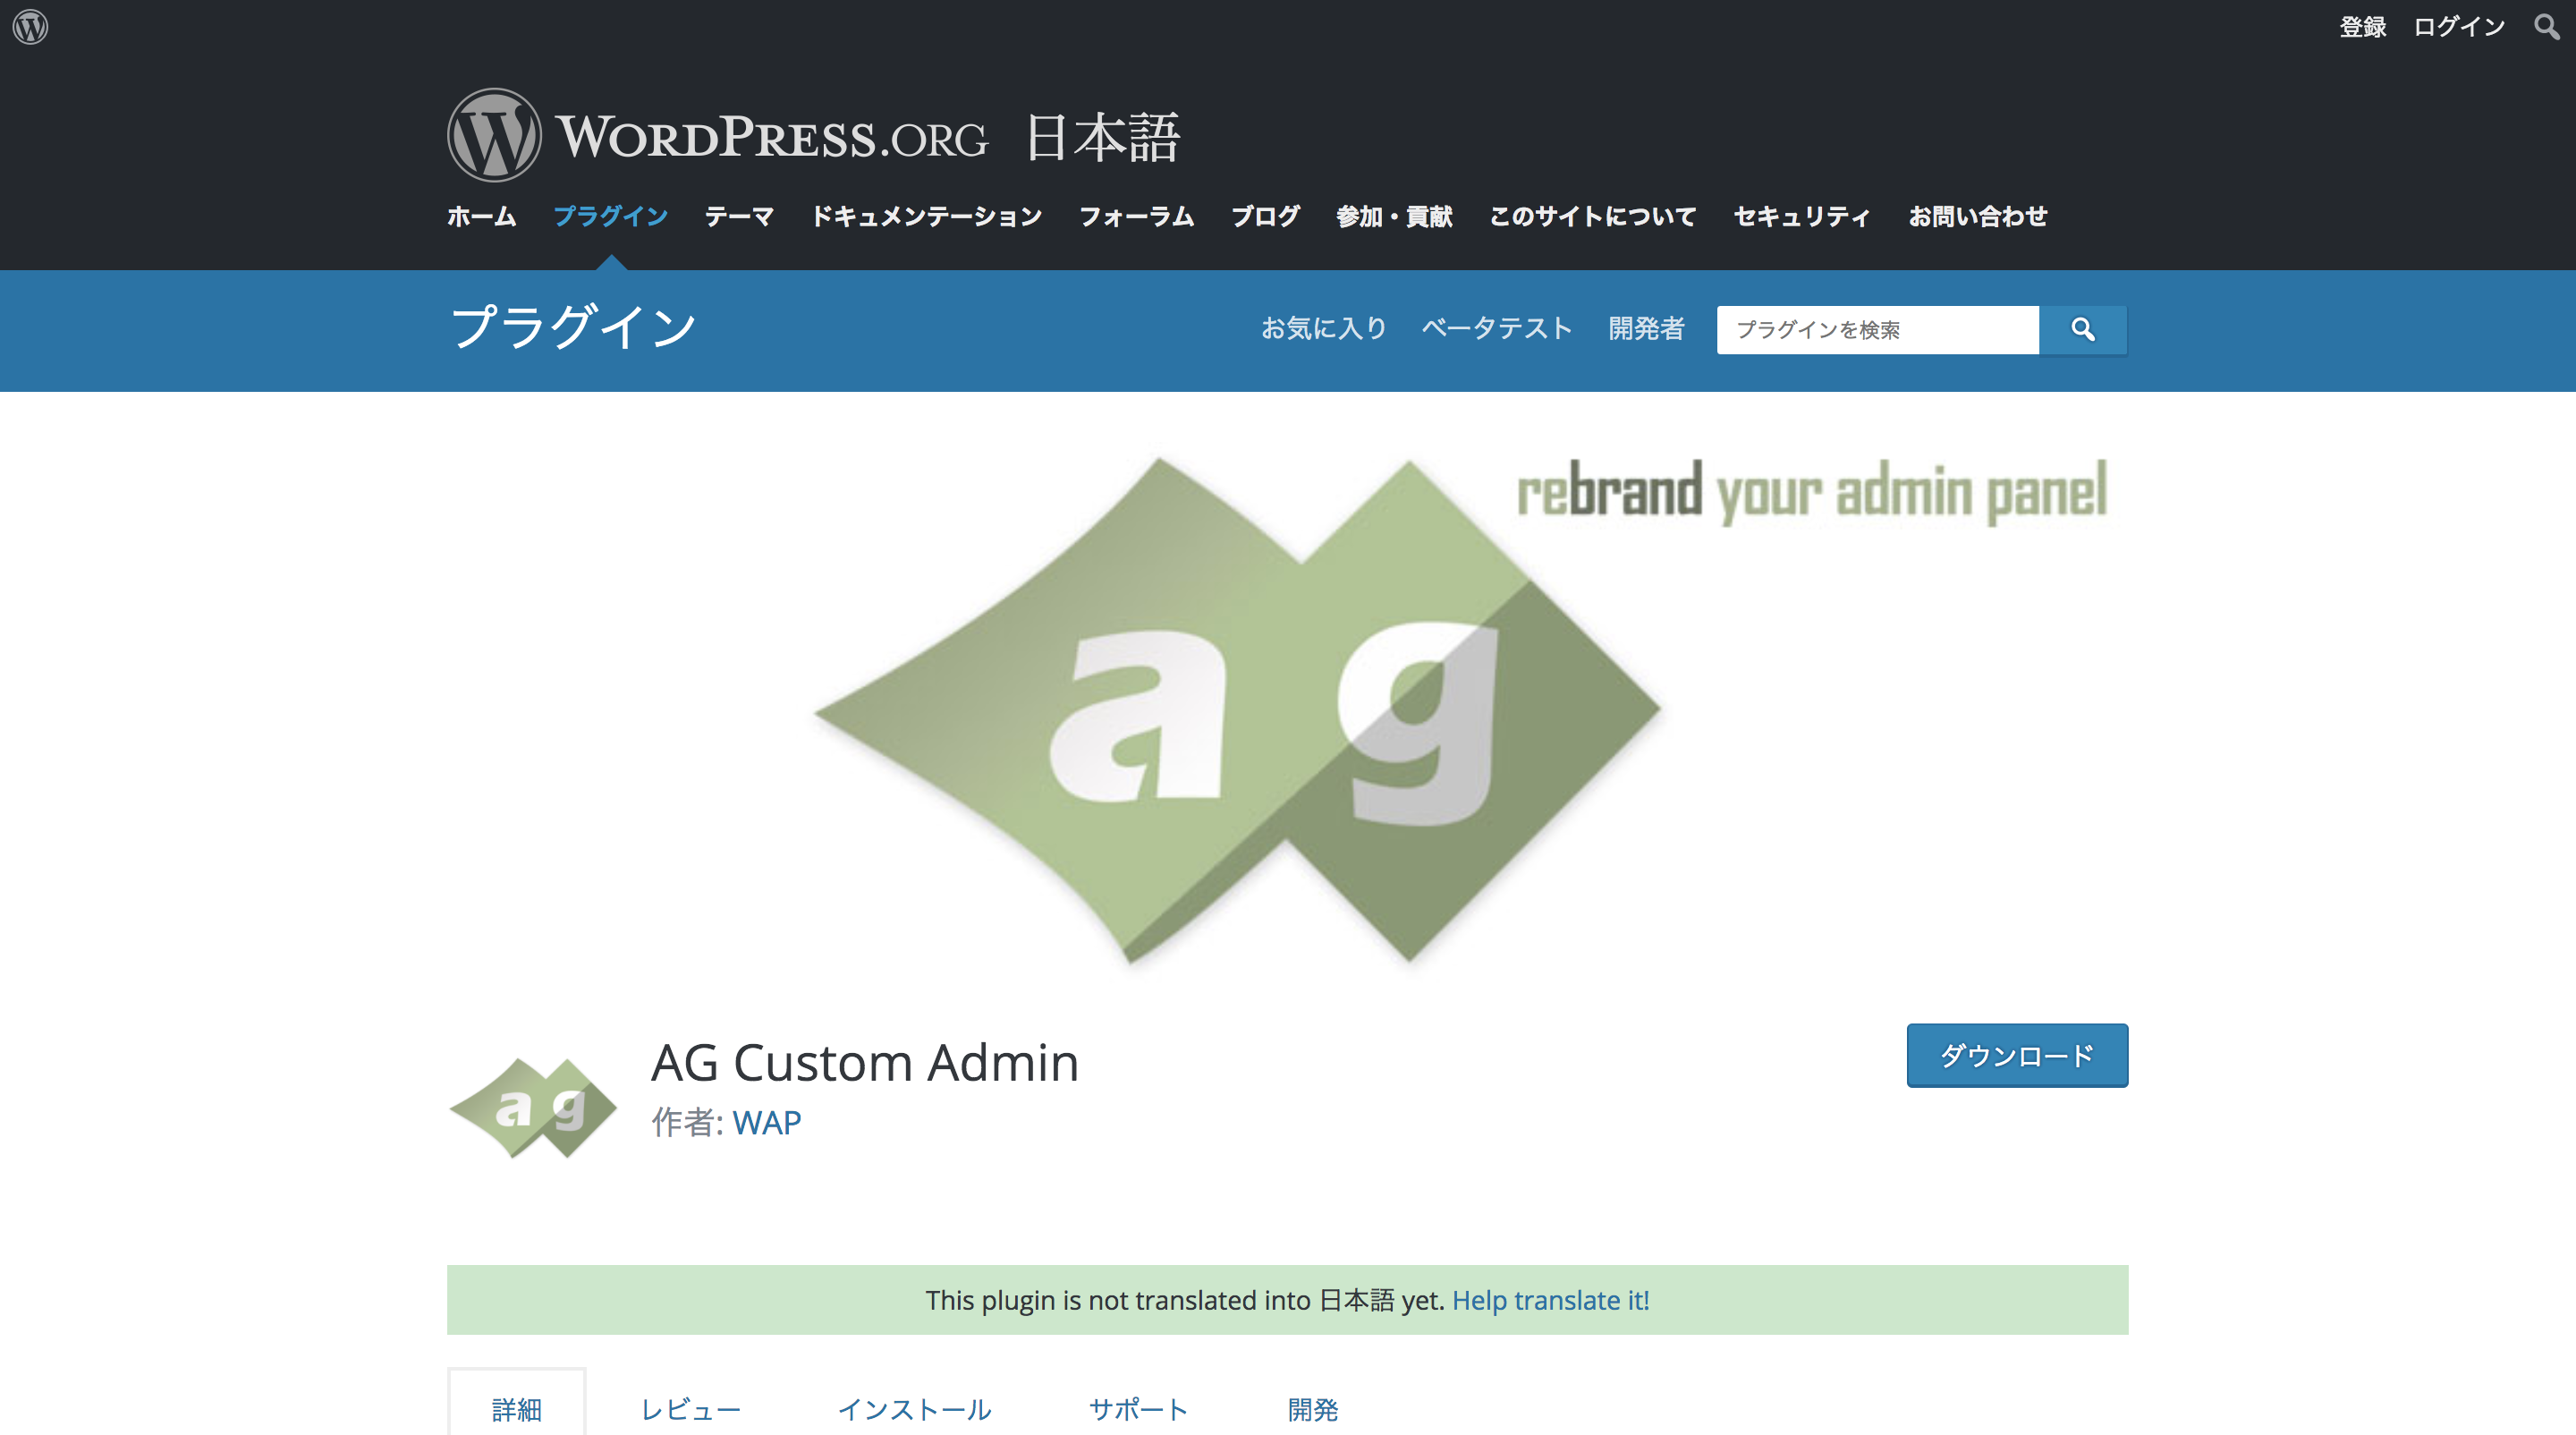 AG Custom Adimin